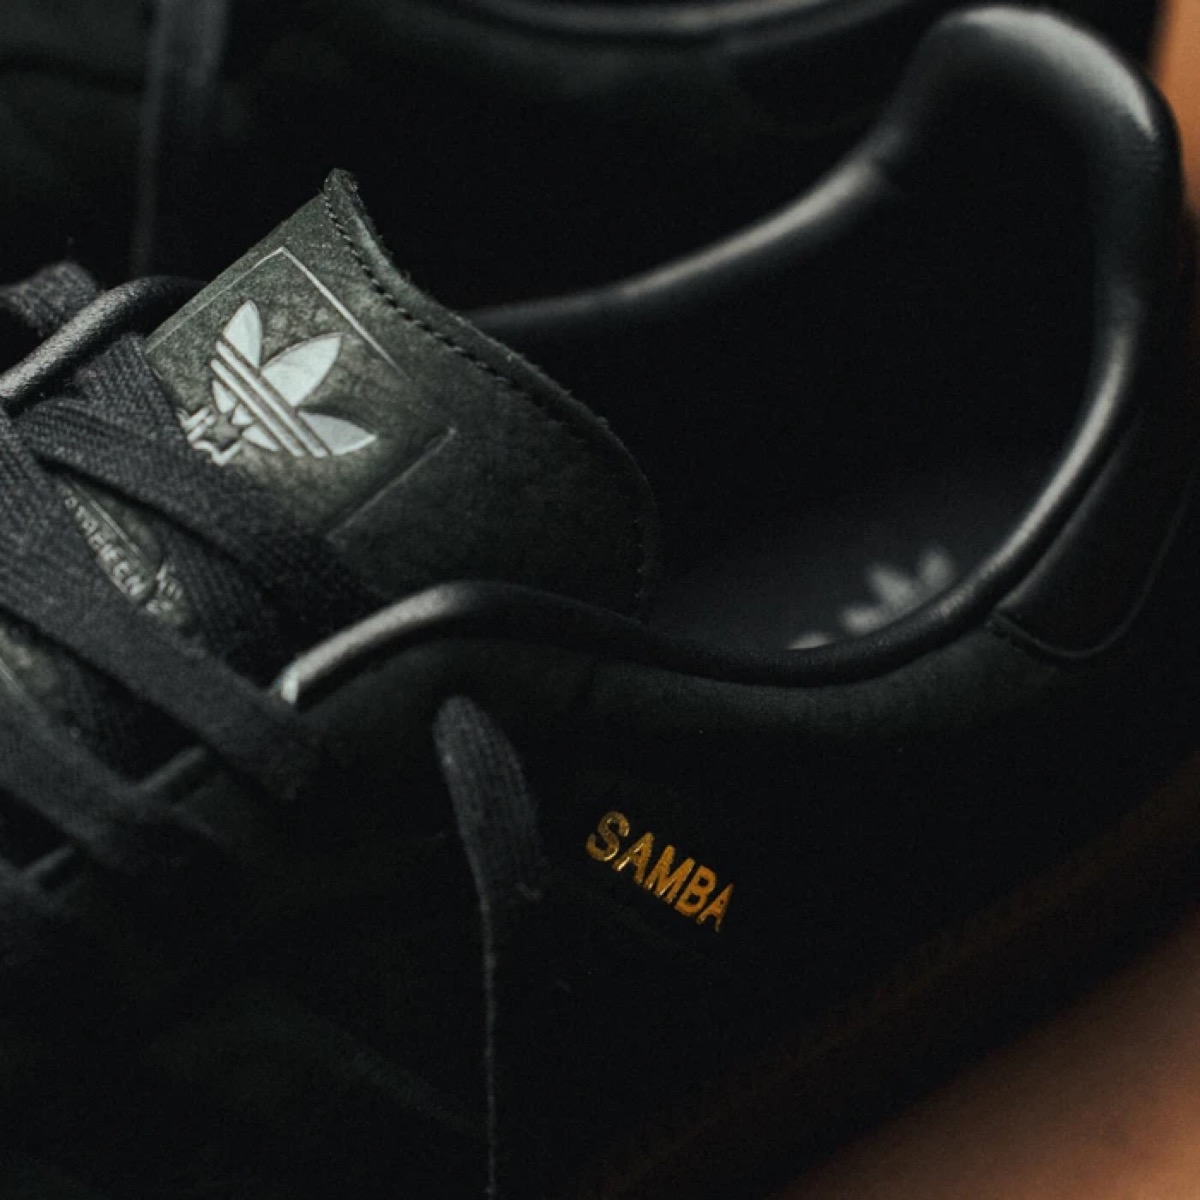 Adidas Originals Samba black 23.5cm